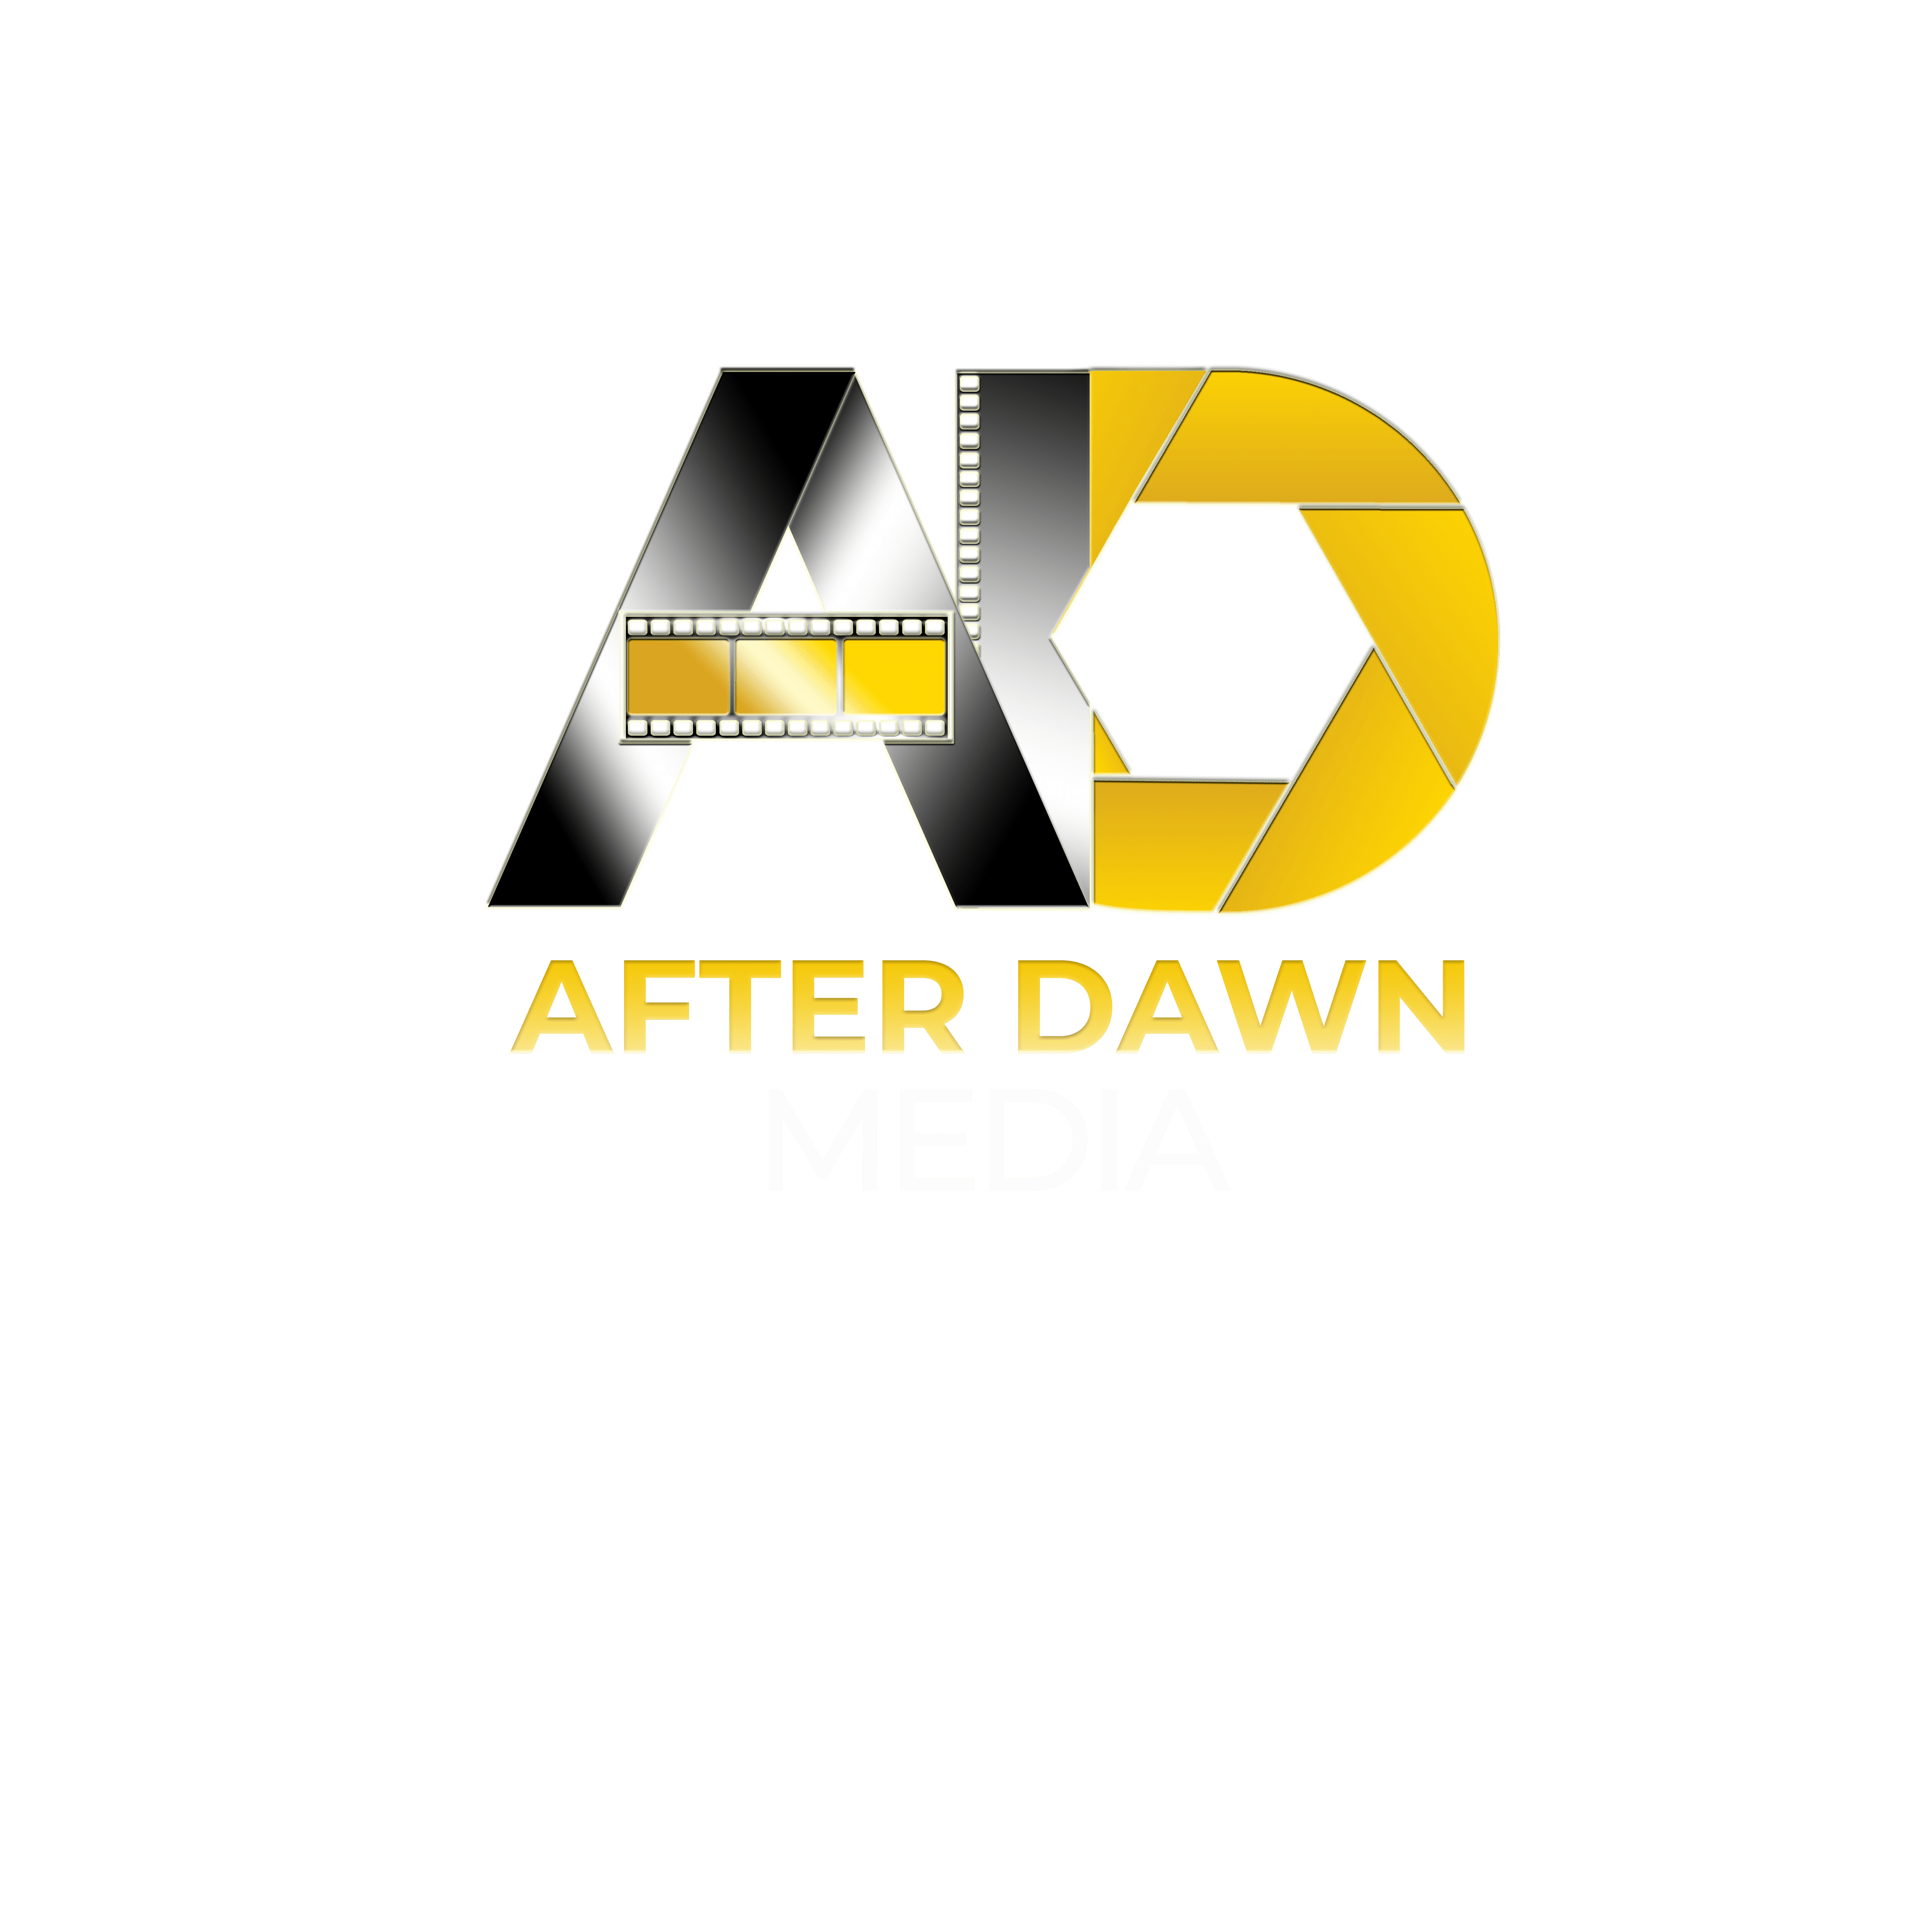 After Dawn Media